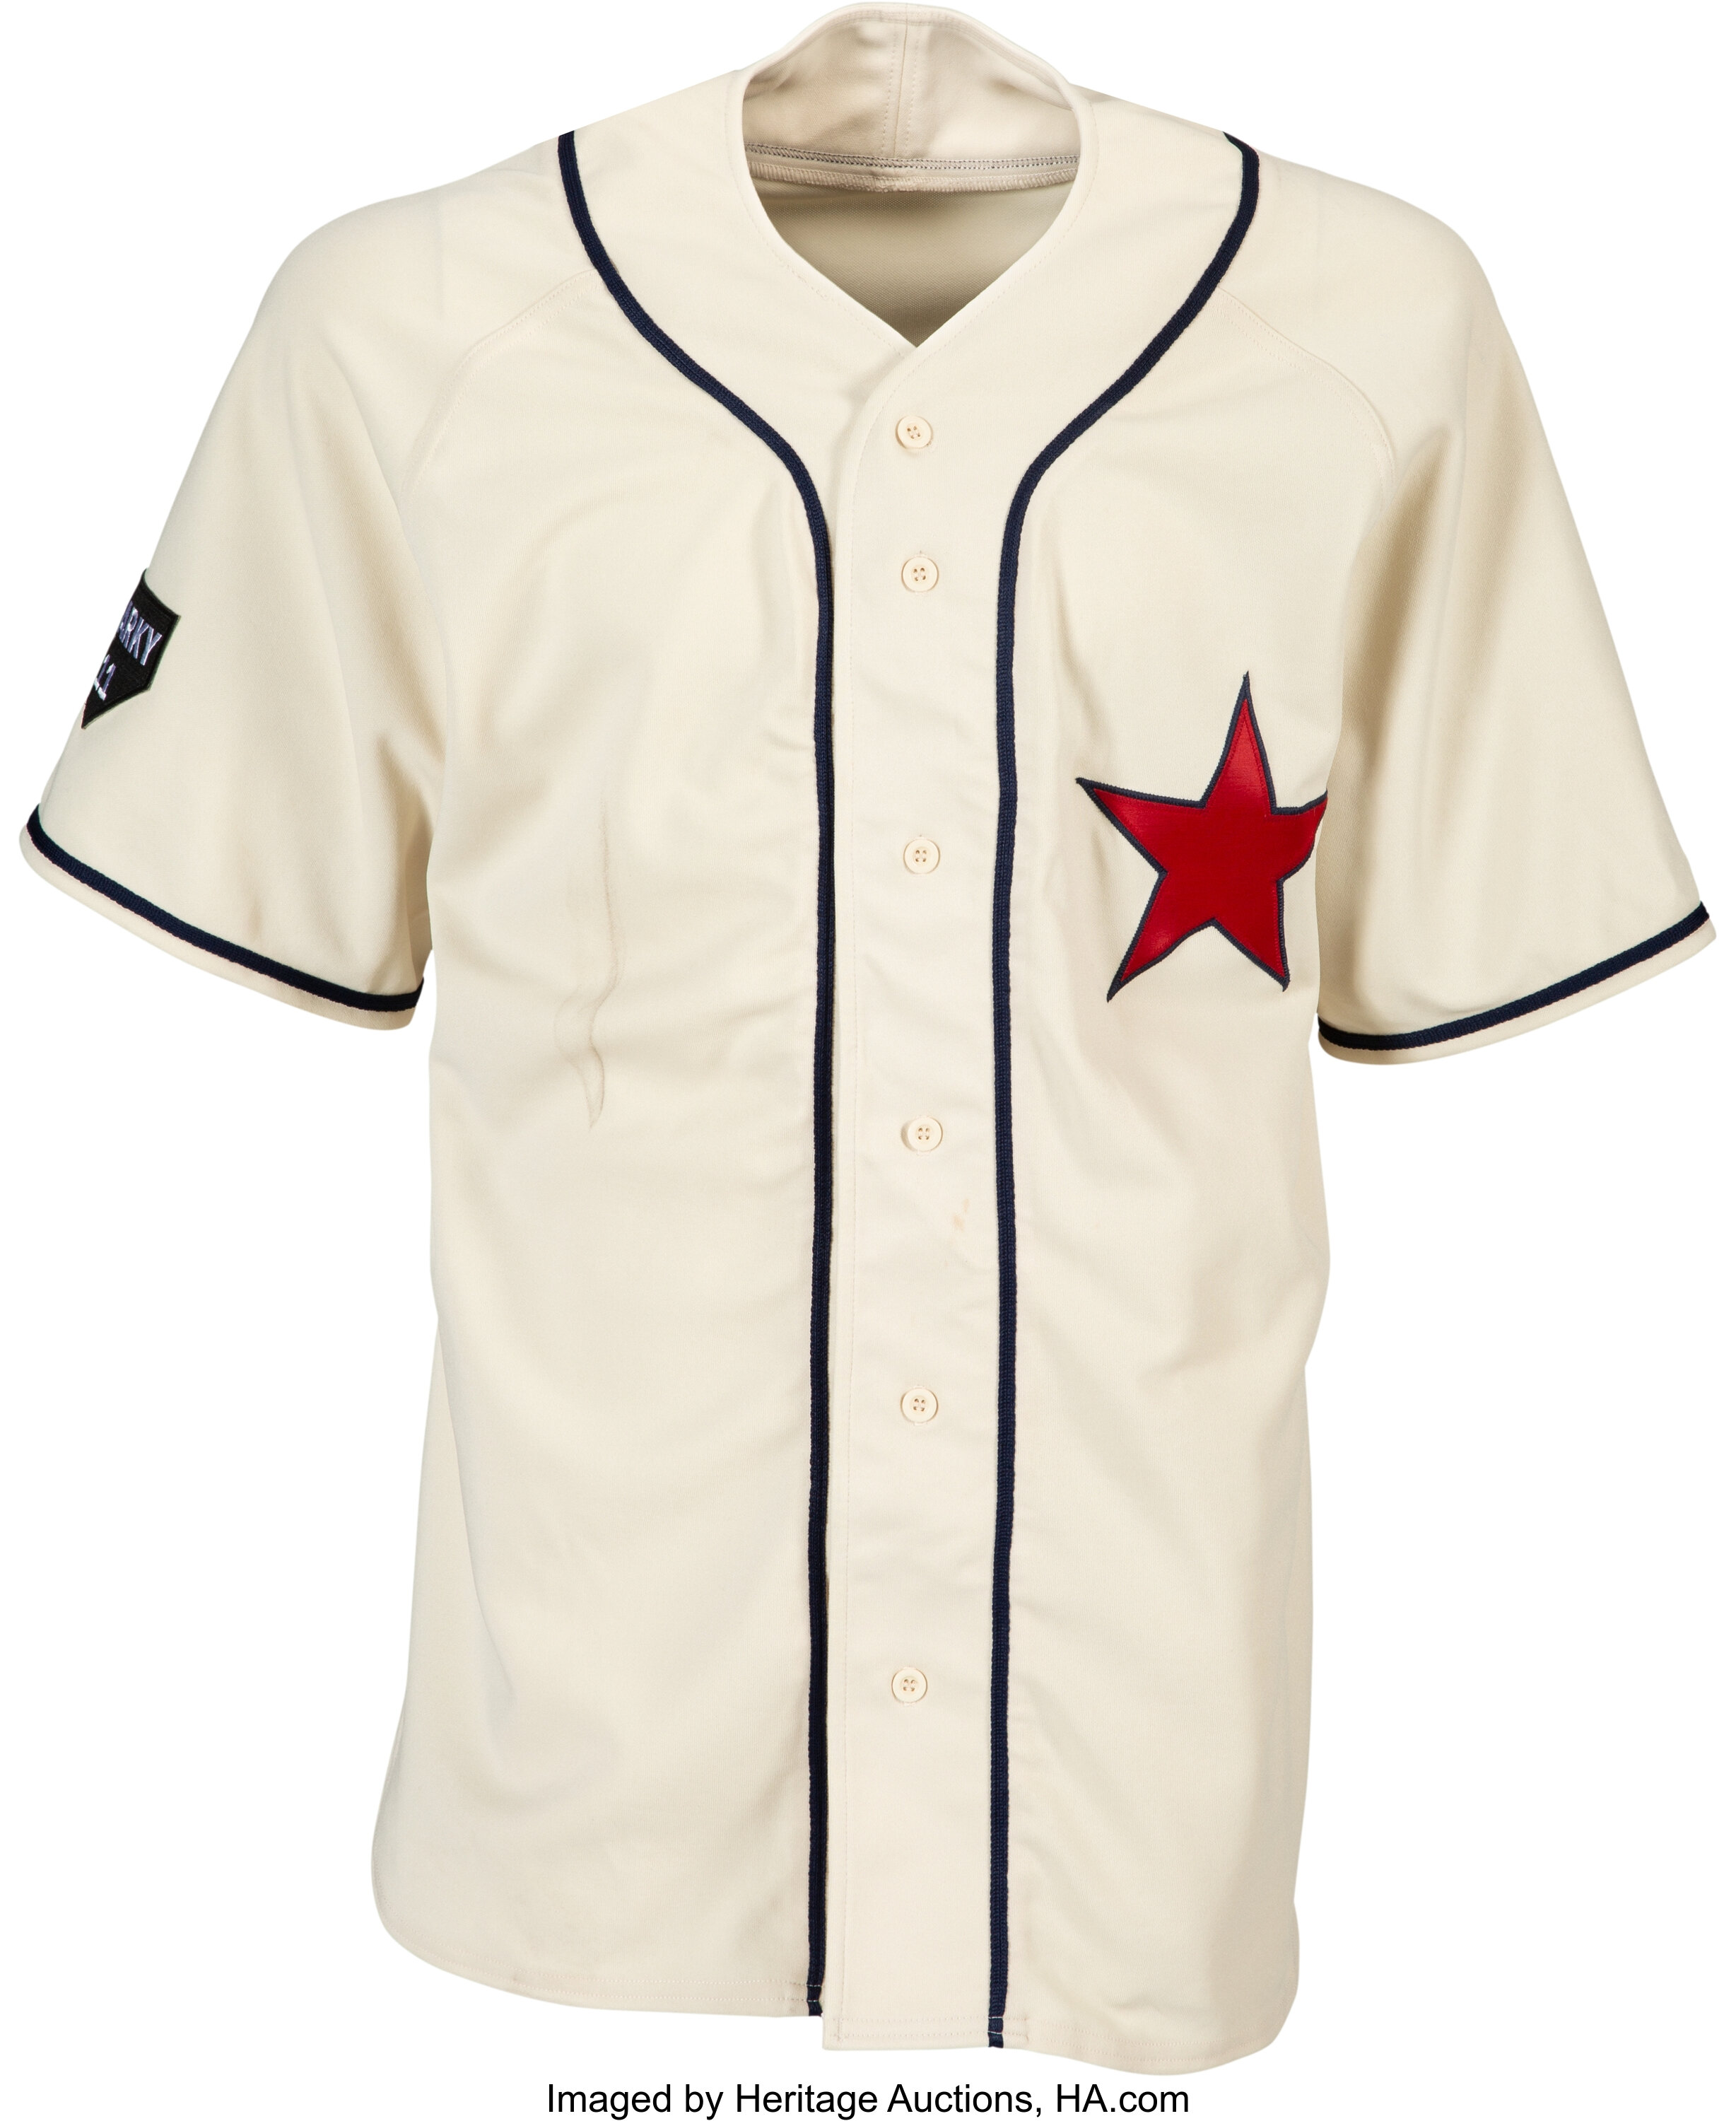 2013 White Sox Sunday Throwback Uniform